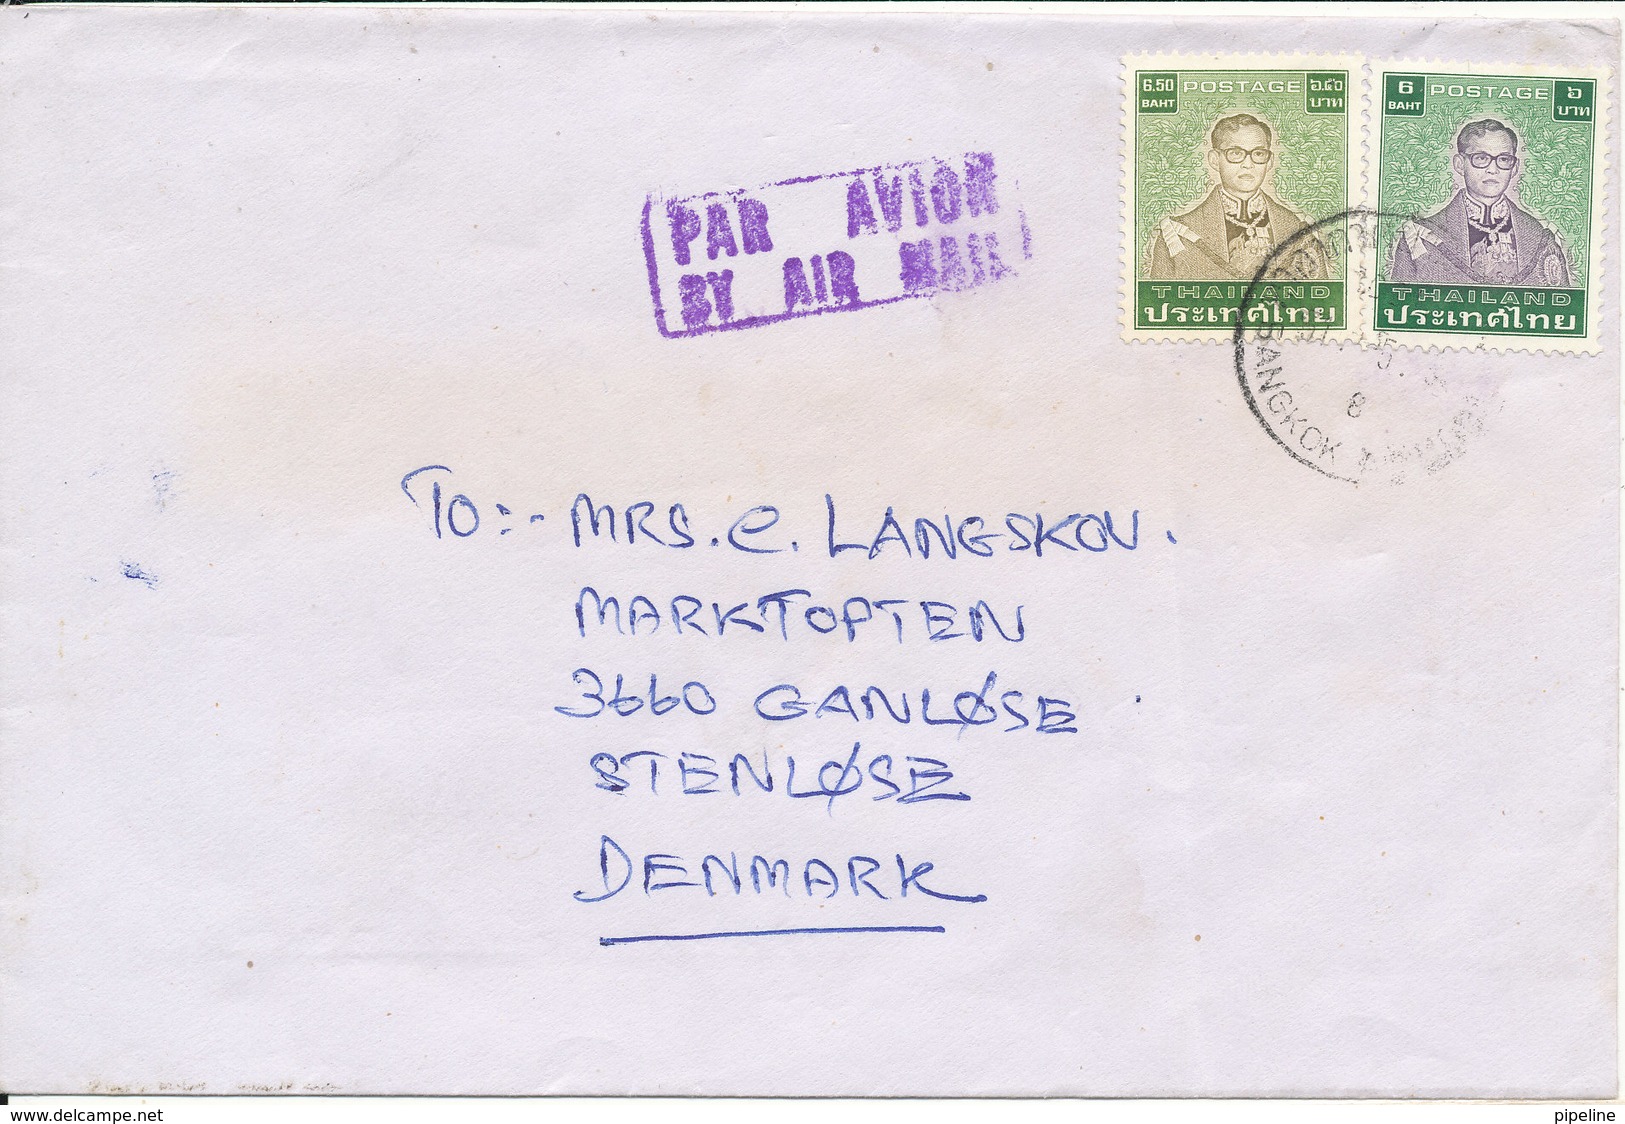 Thailand Cover Sent Air Mail To Denmark - Thailand